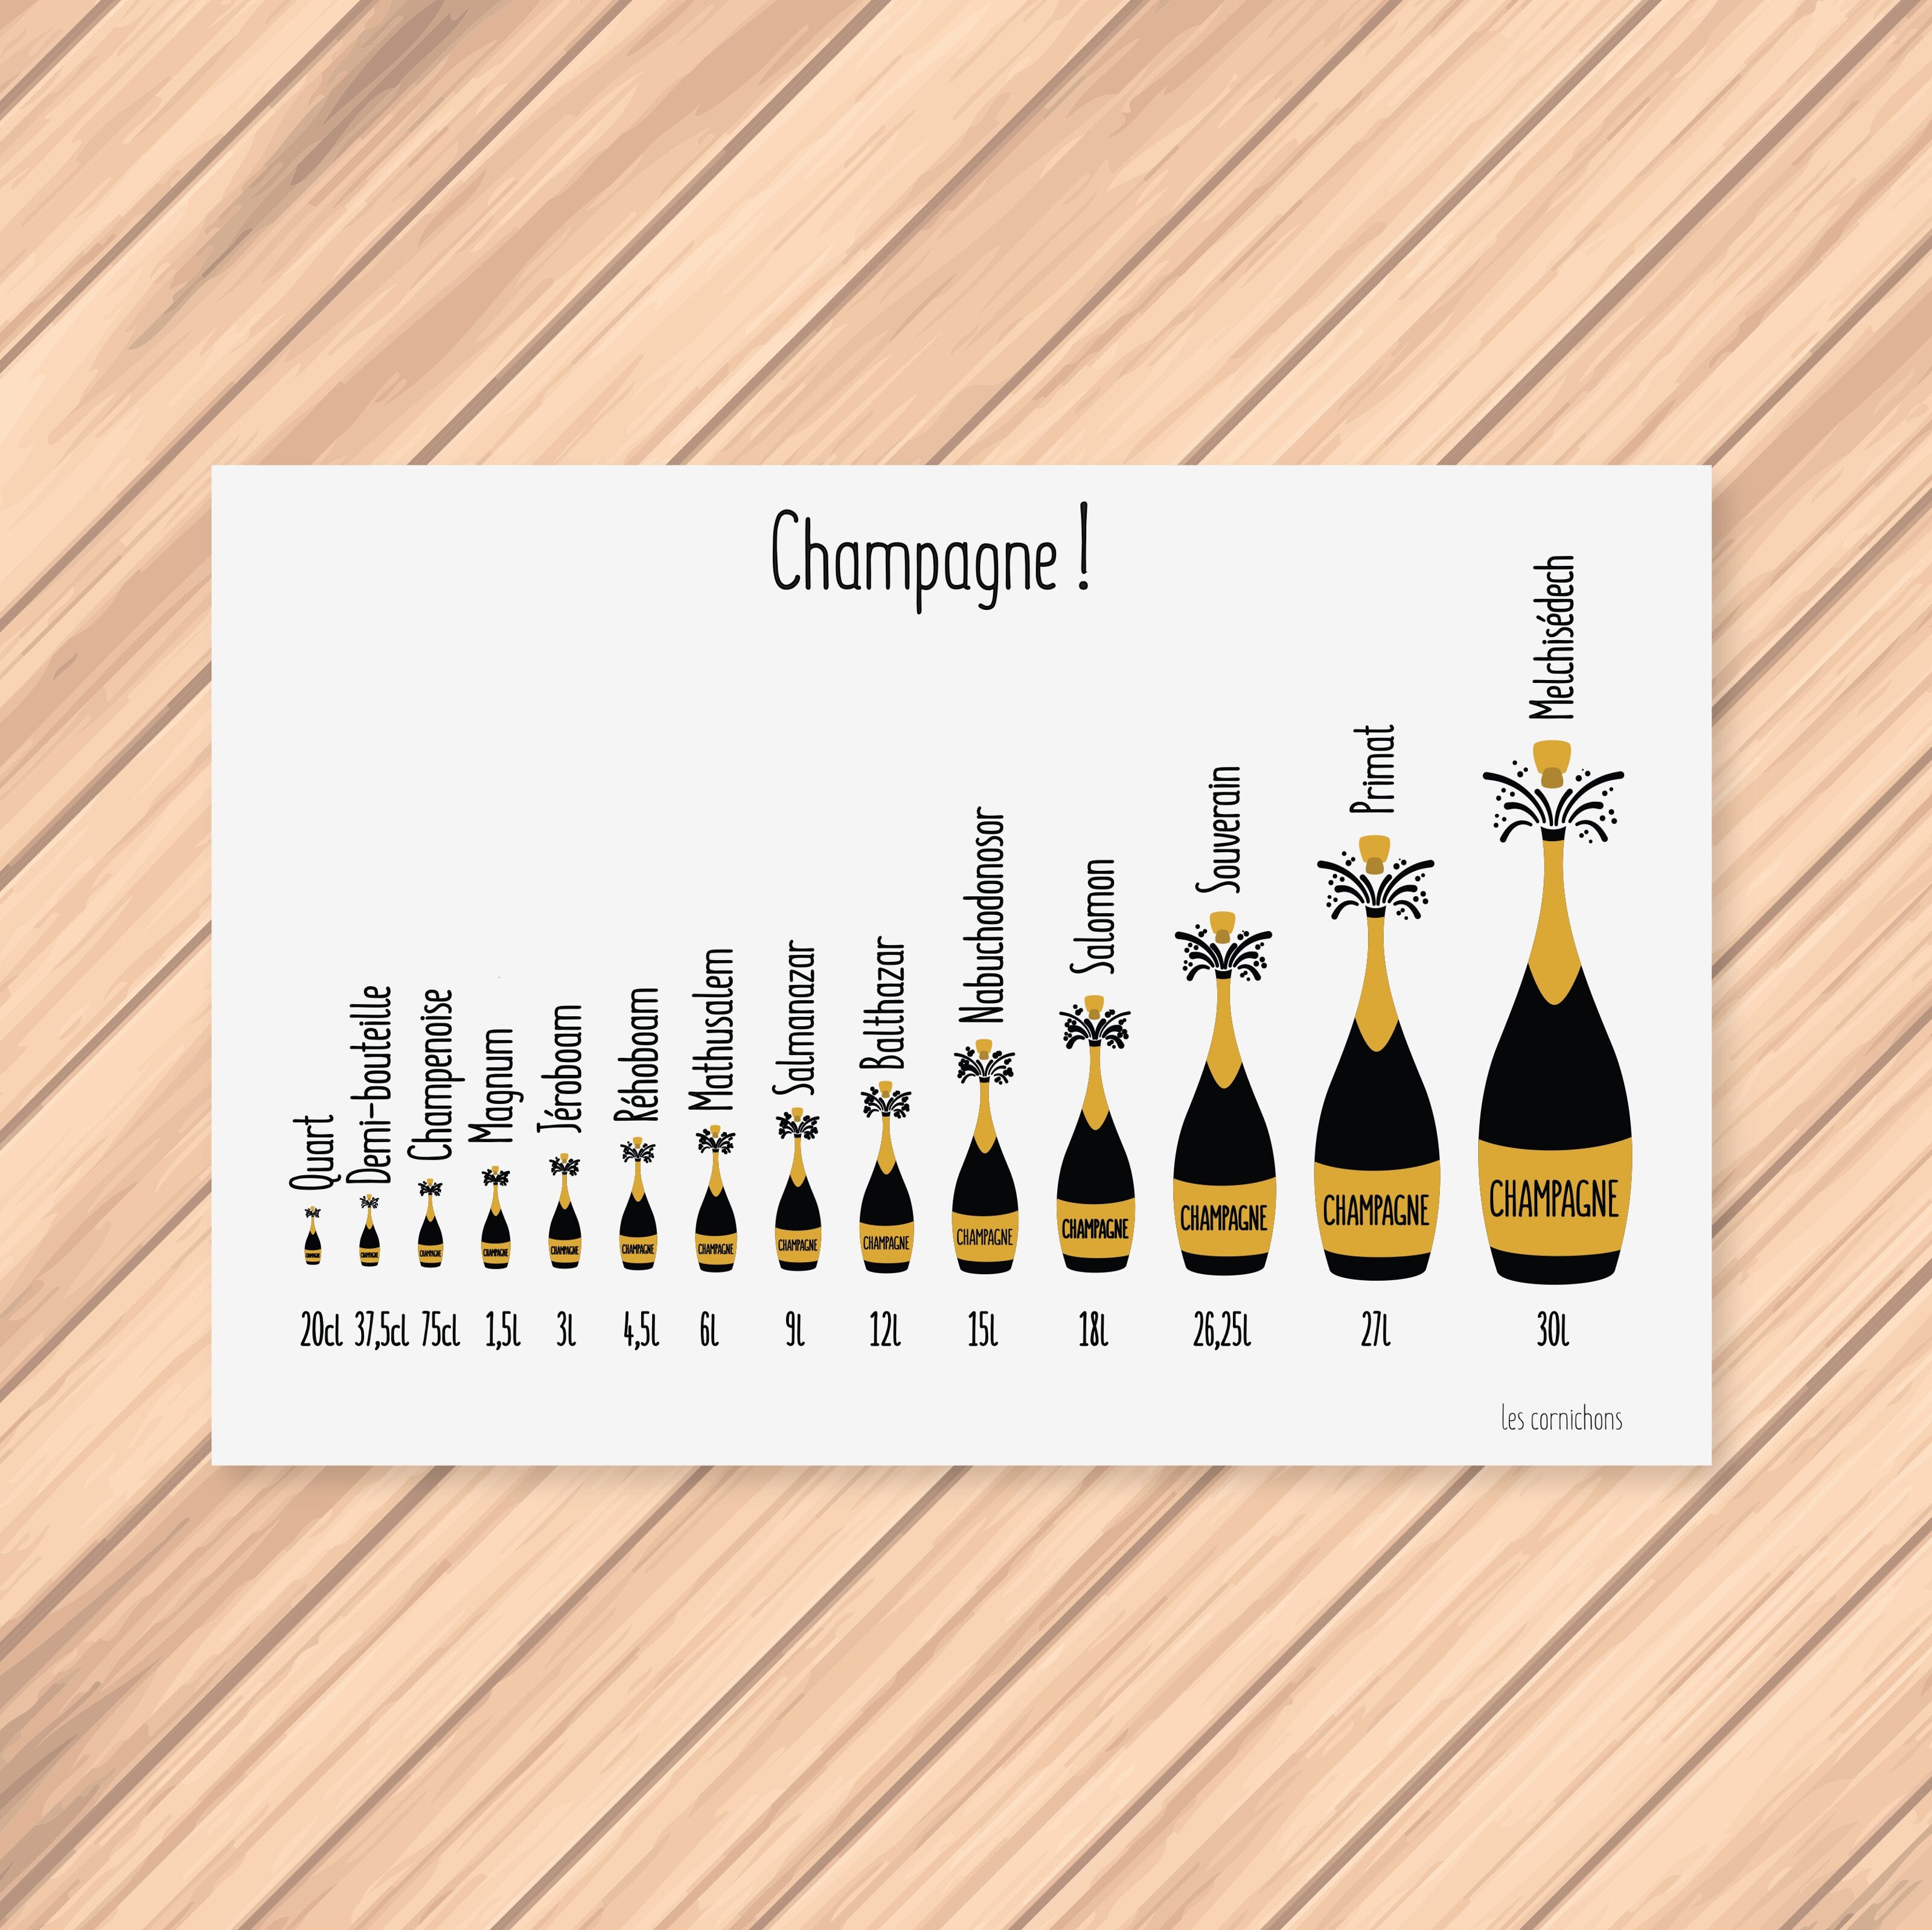 Cornichons de la famille Champagne